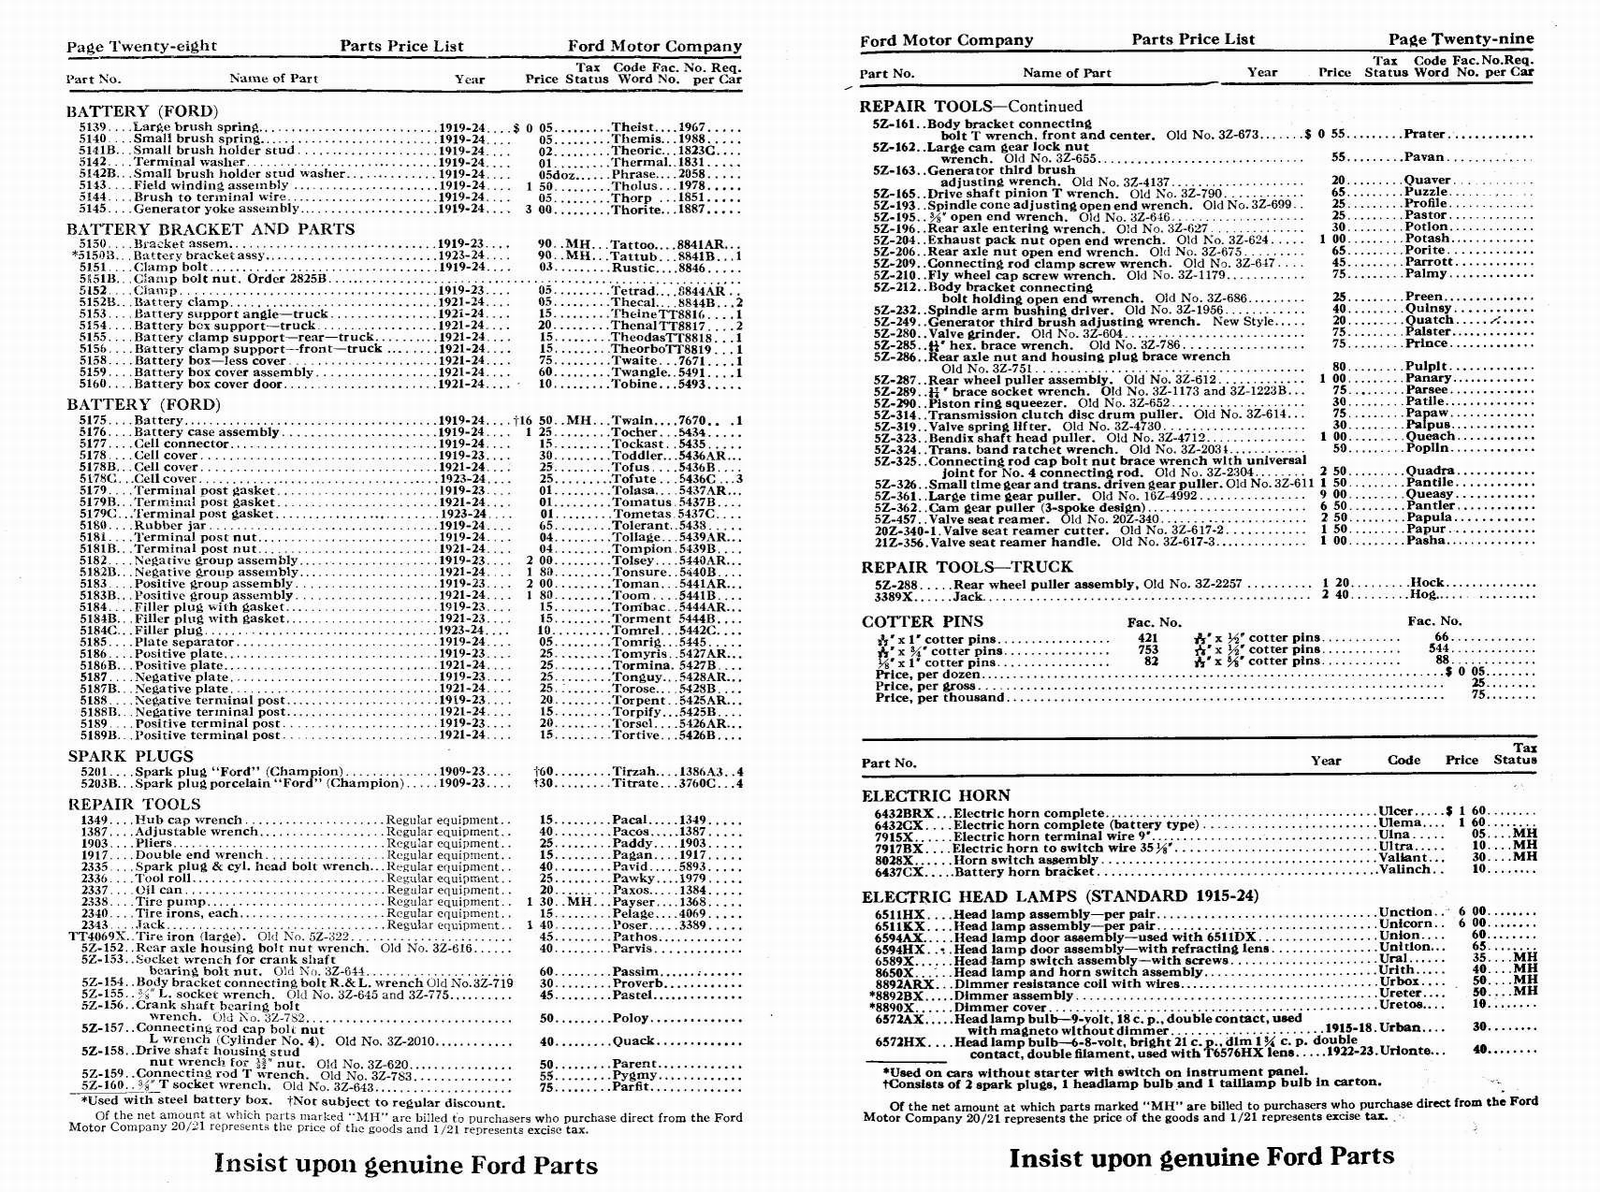 n_1924 Ford Price List-28-29.jpg